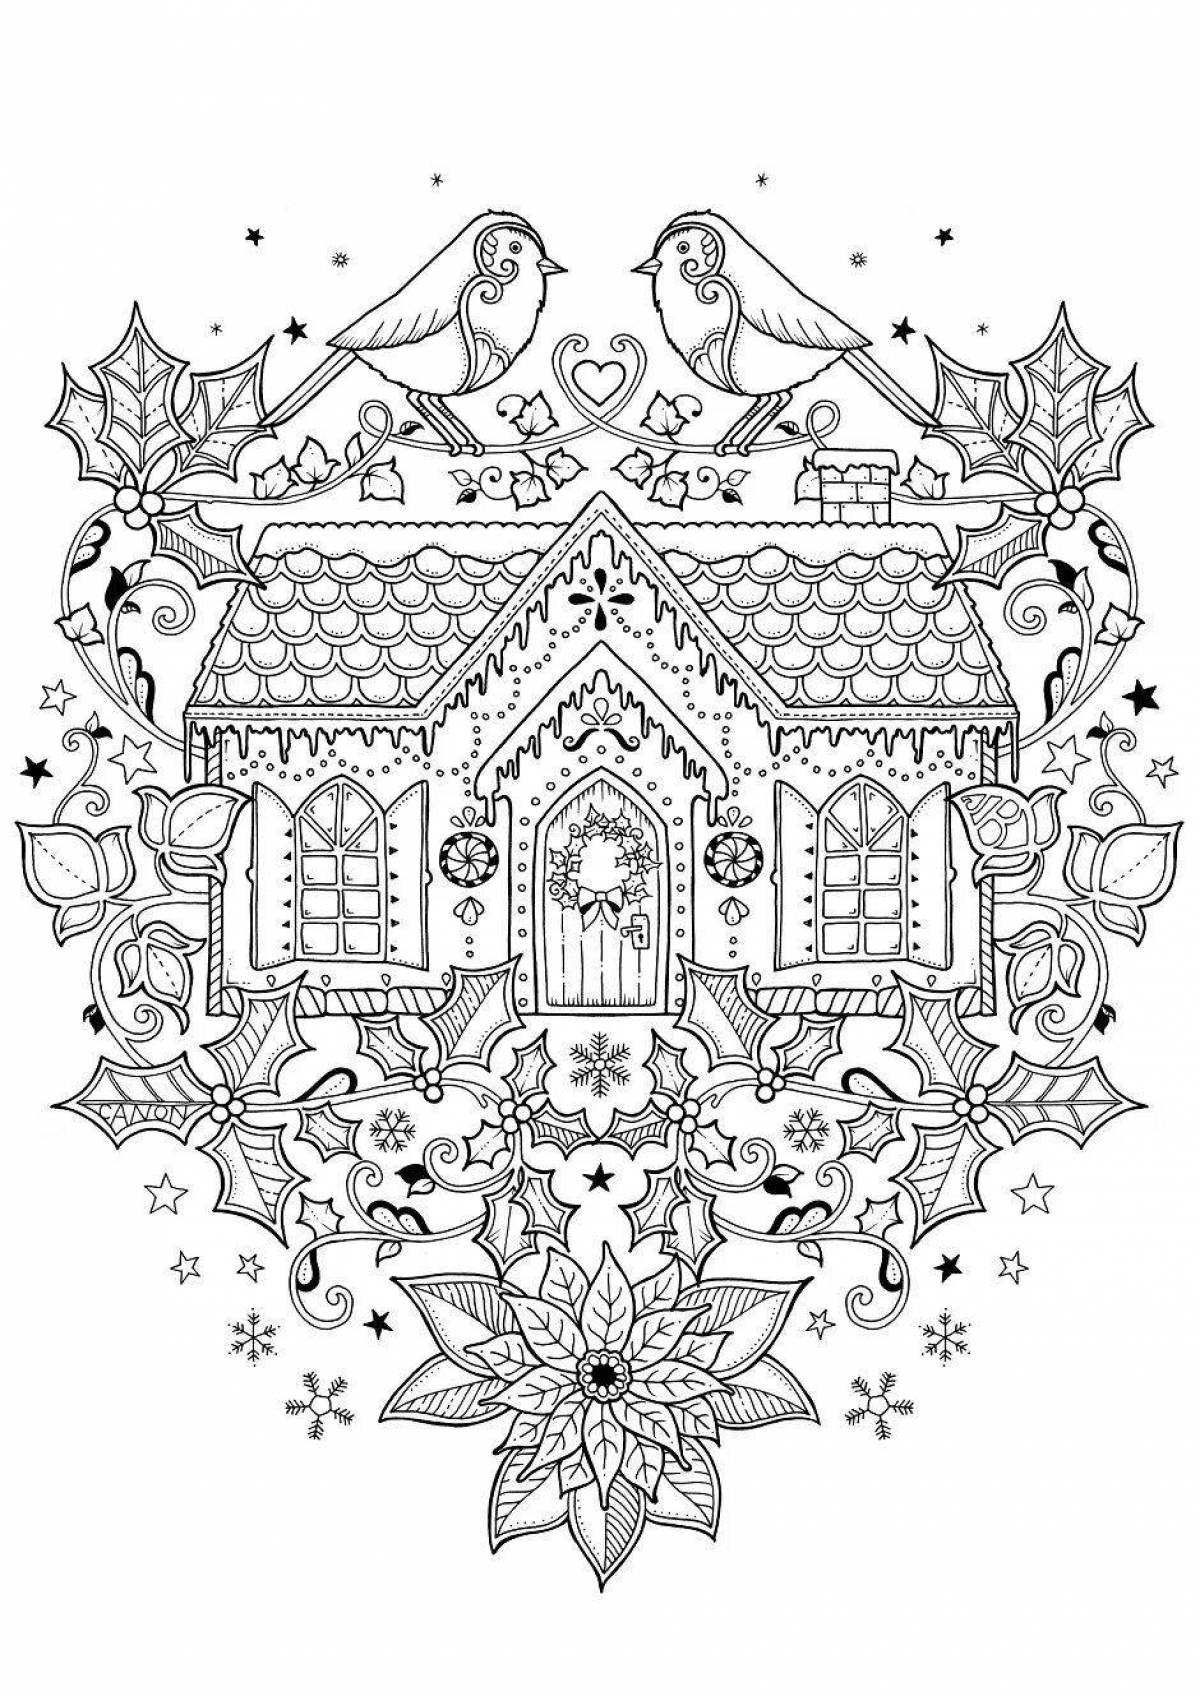 Joanna Basford's Vibrant Christmas Wonder Coloring Page